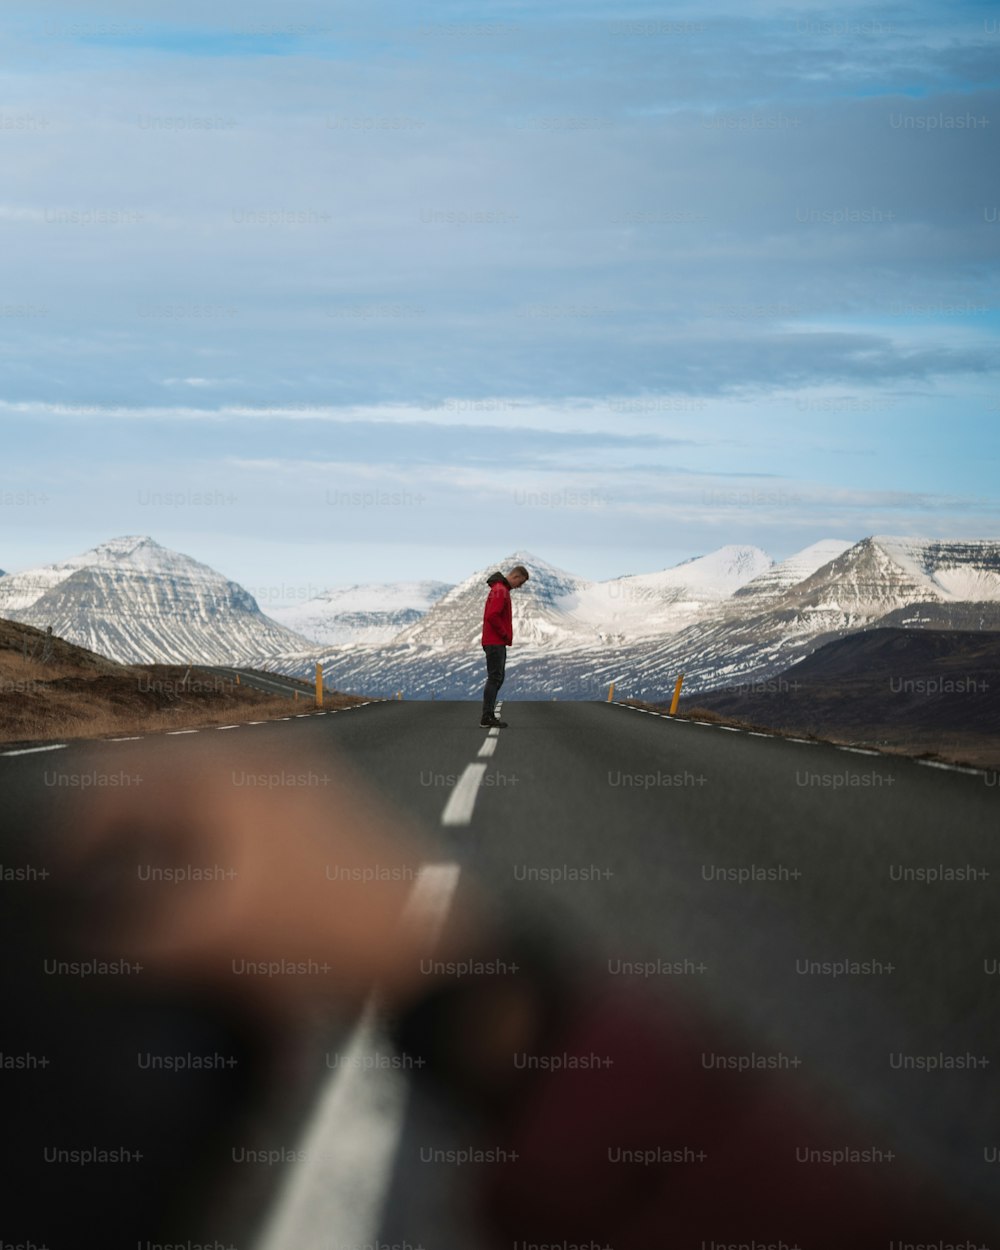 Una persona caminando por un camino con montañas cubiertas de nieve en el fondo